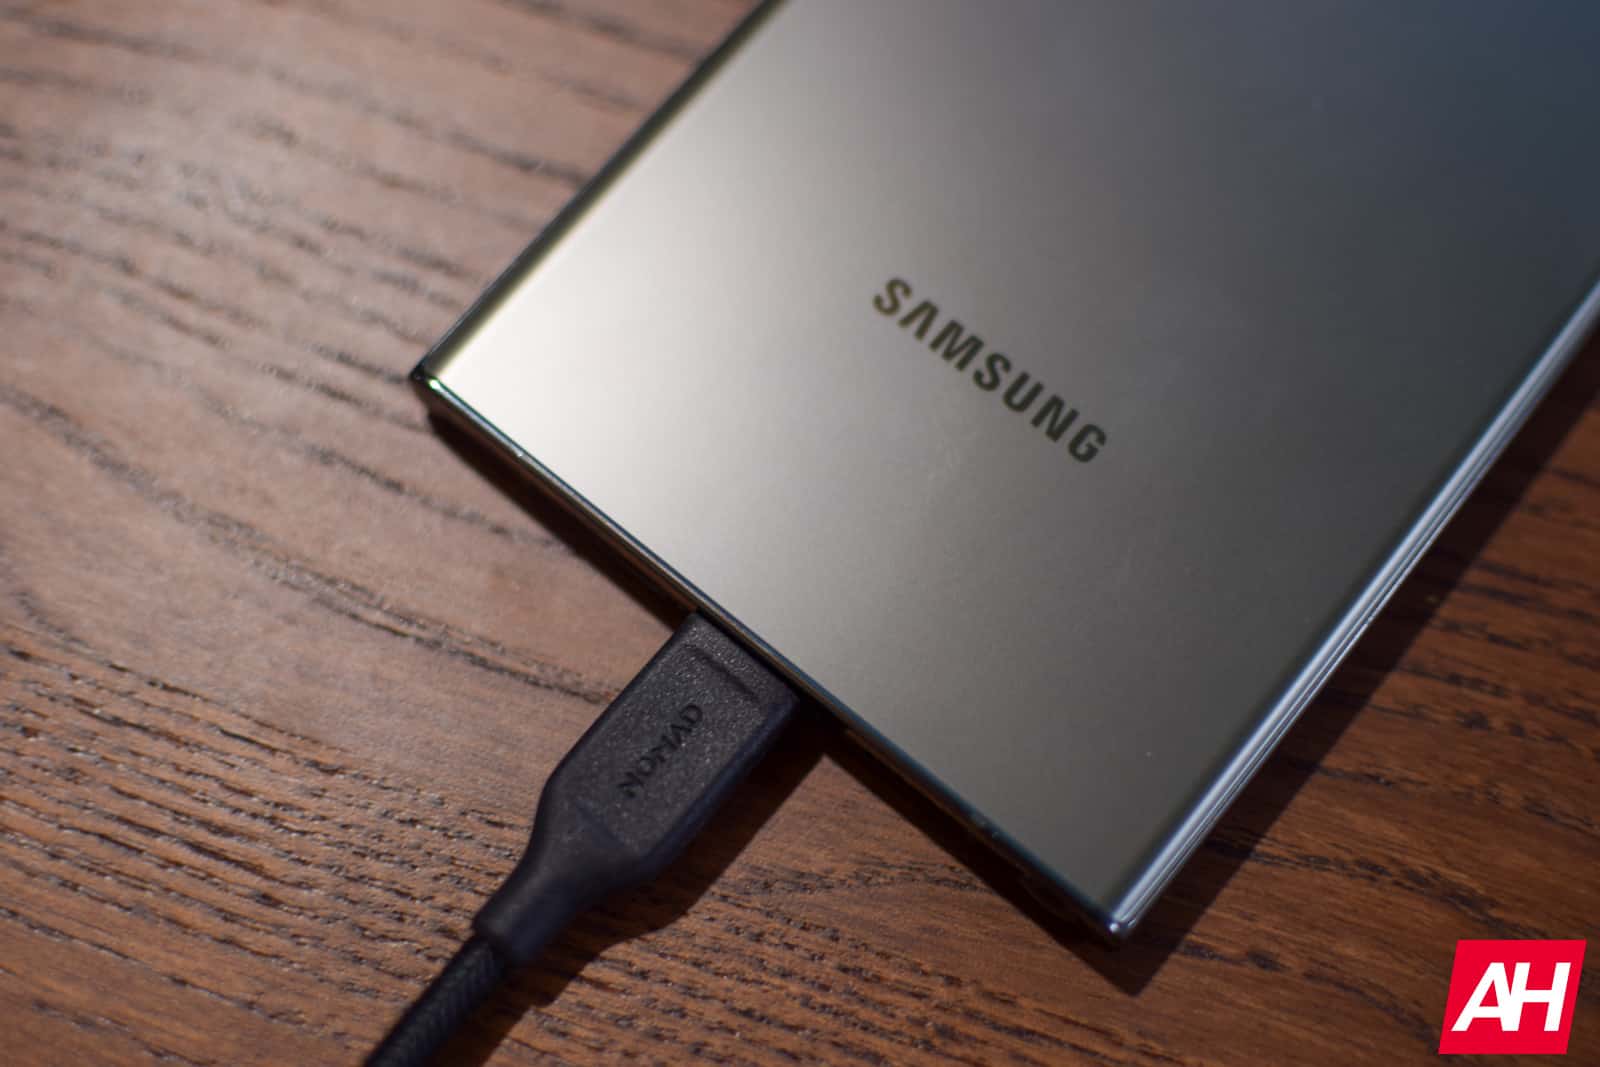 Samsung bereitet neue Schnellladegeräte vor, darunter ein 50-W-Doppelladegerät